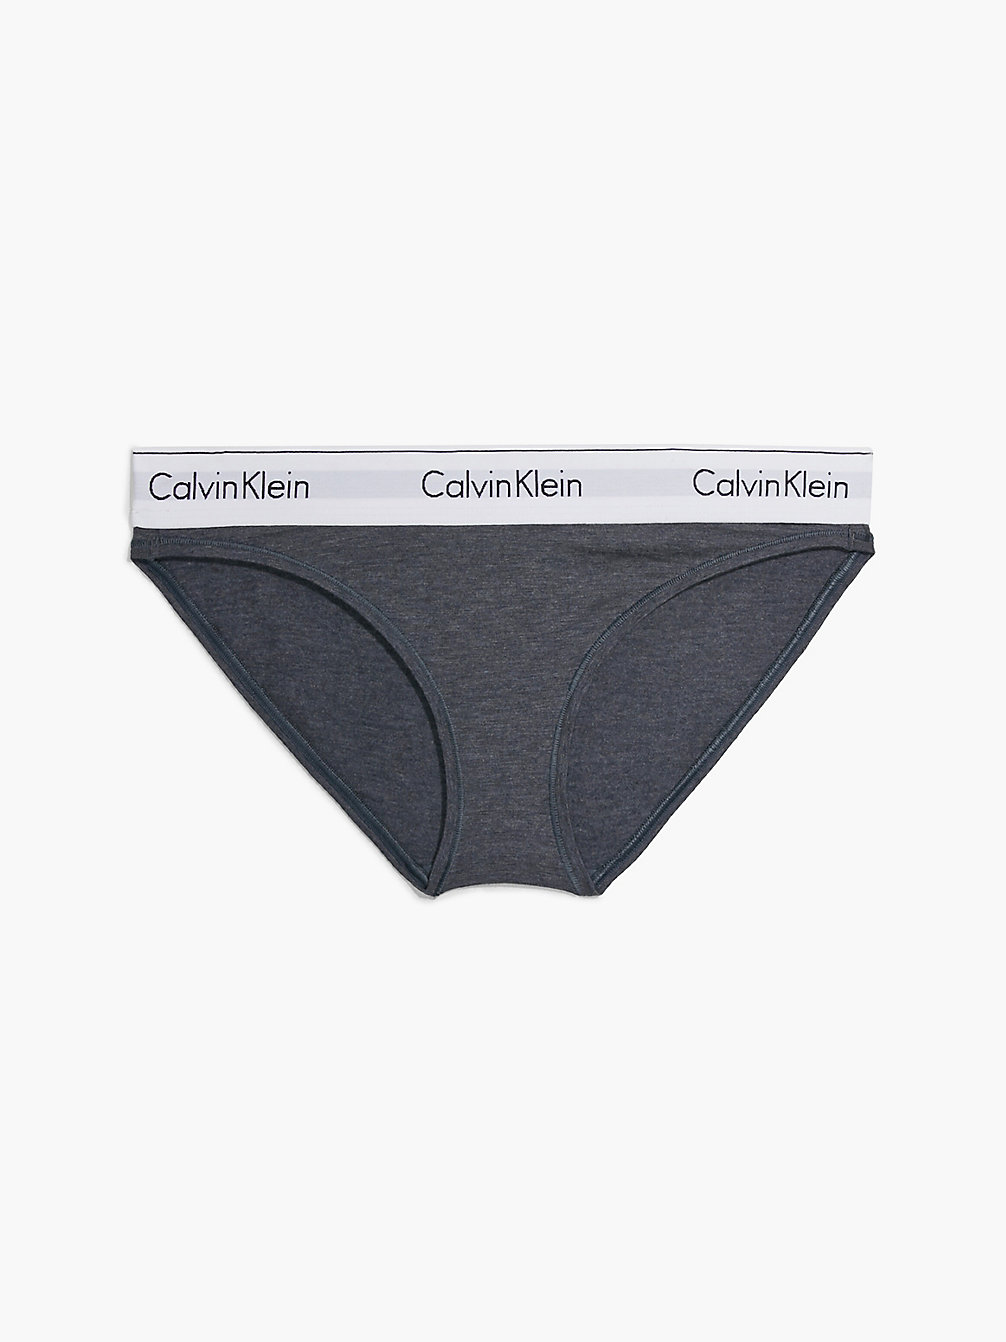 HEMISPHERE BLUE HEATHER Bikini Briefs - Modern Cotton undefined women Calvin Klein